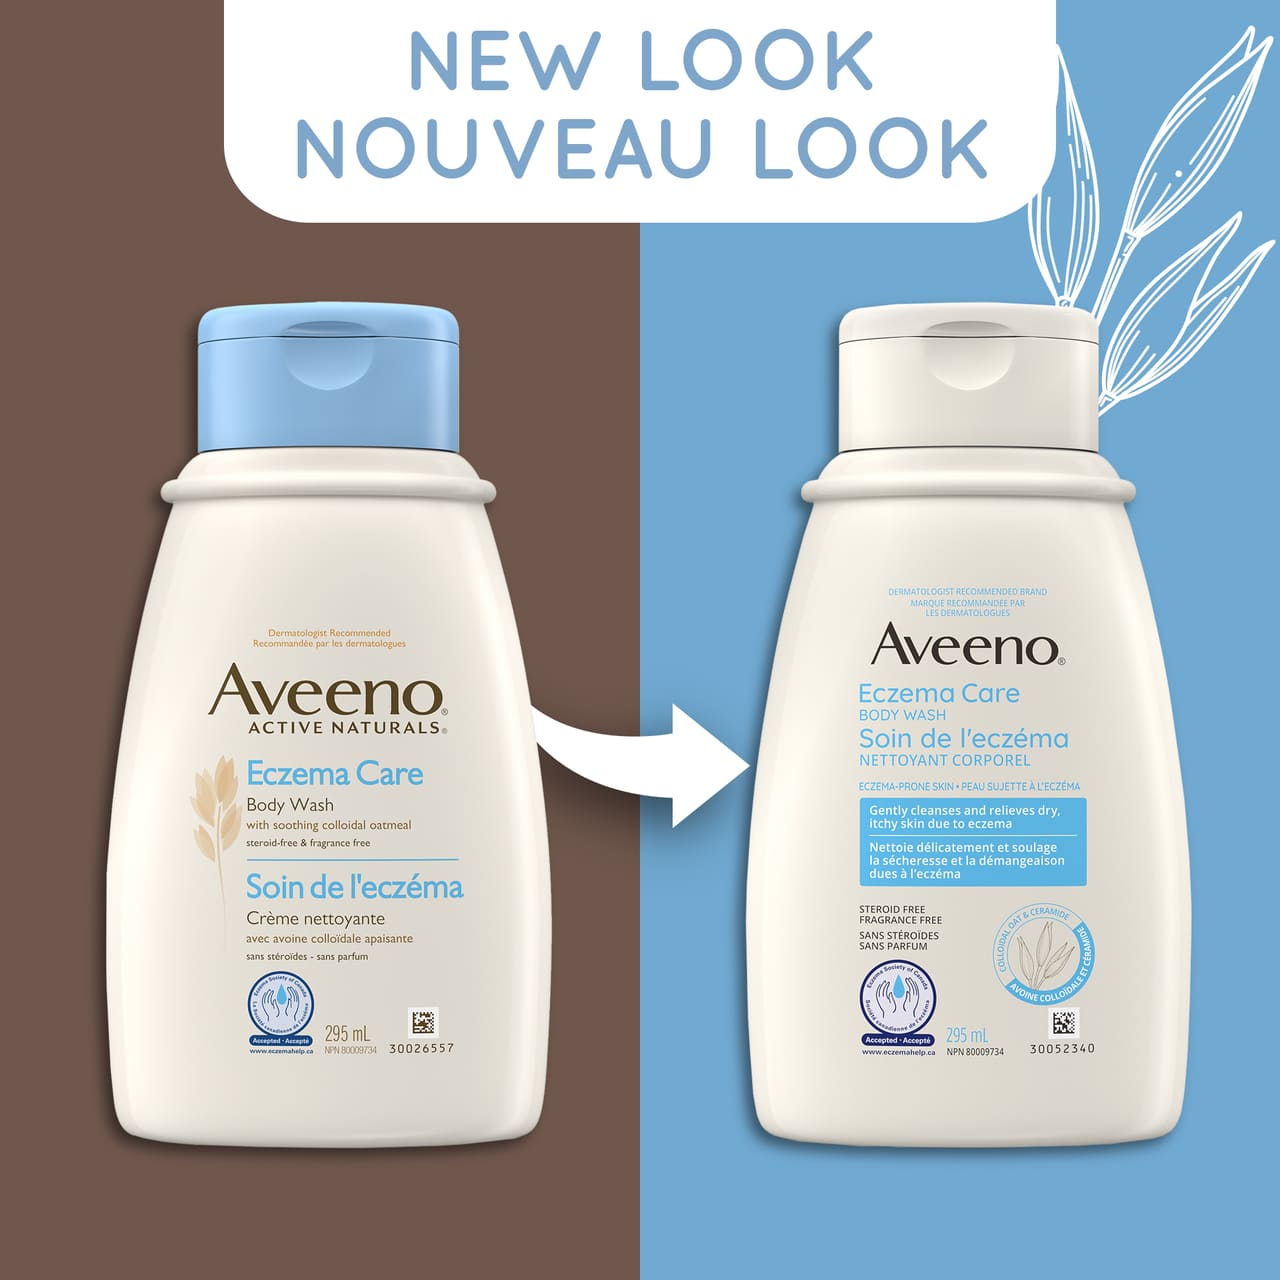 Ancien et nouvel emballage du flacon de 295 ml du nettoyant corporel AVEENO® Soin de l'eczéma, avec la mention "nouveau look"